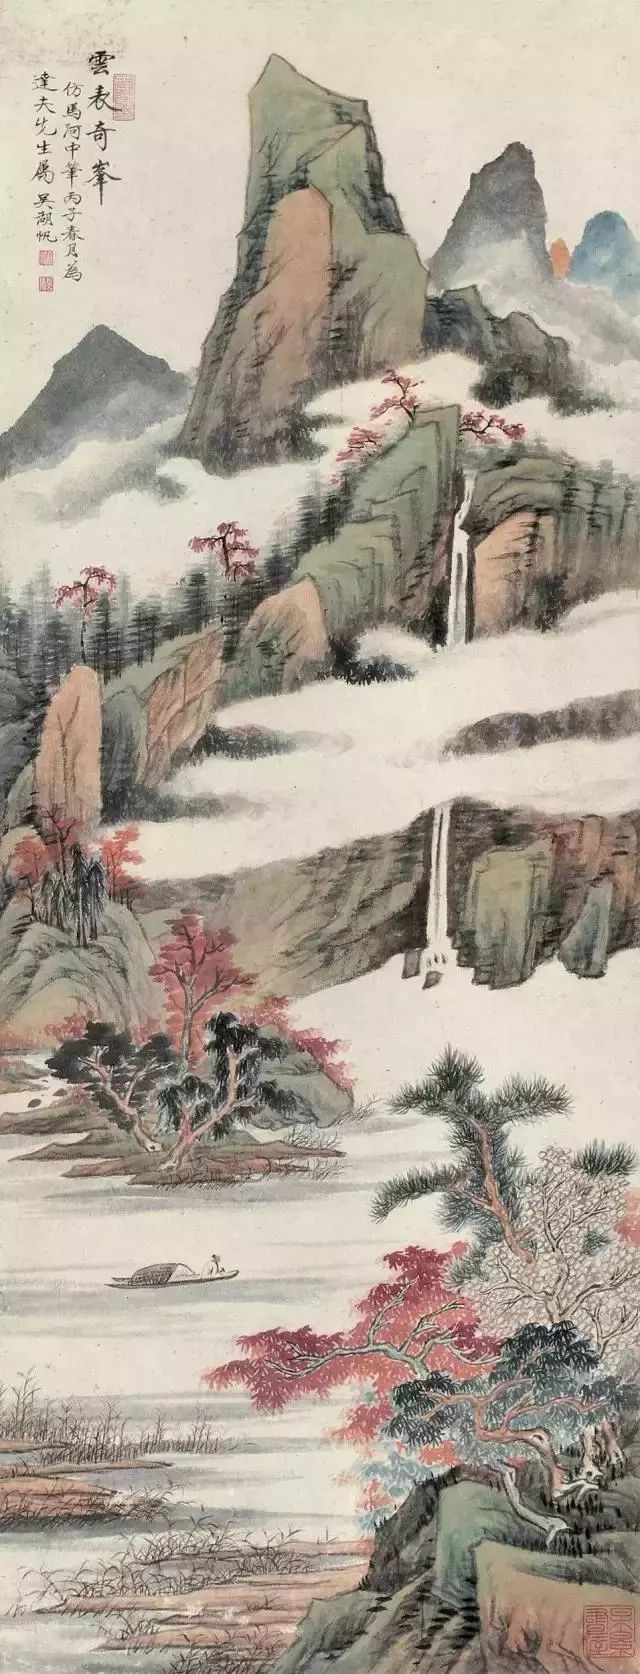 民国画坛第一人”吴湖帆经典山水画- 中国书画网